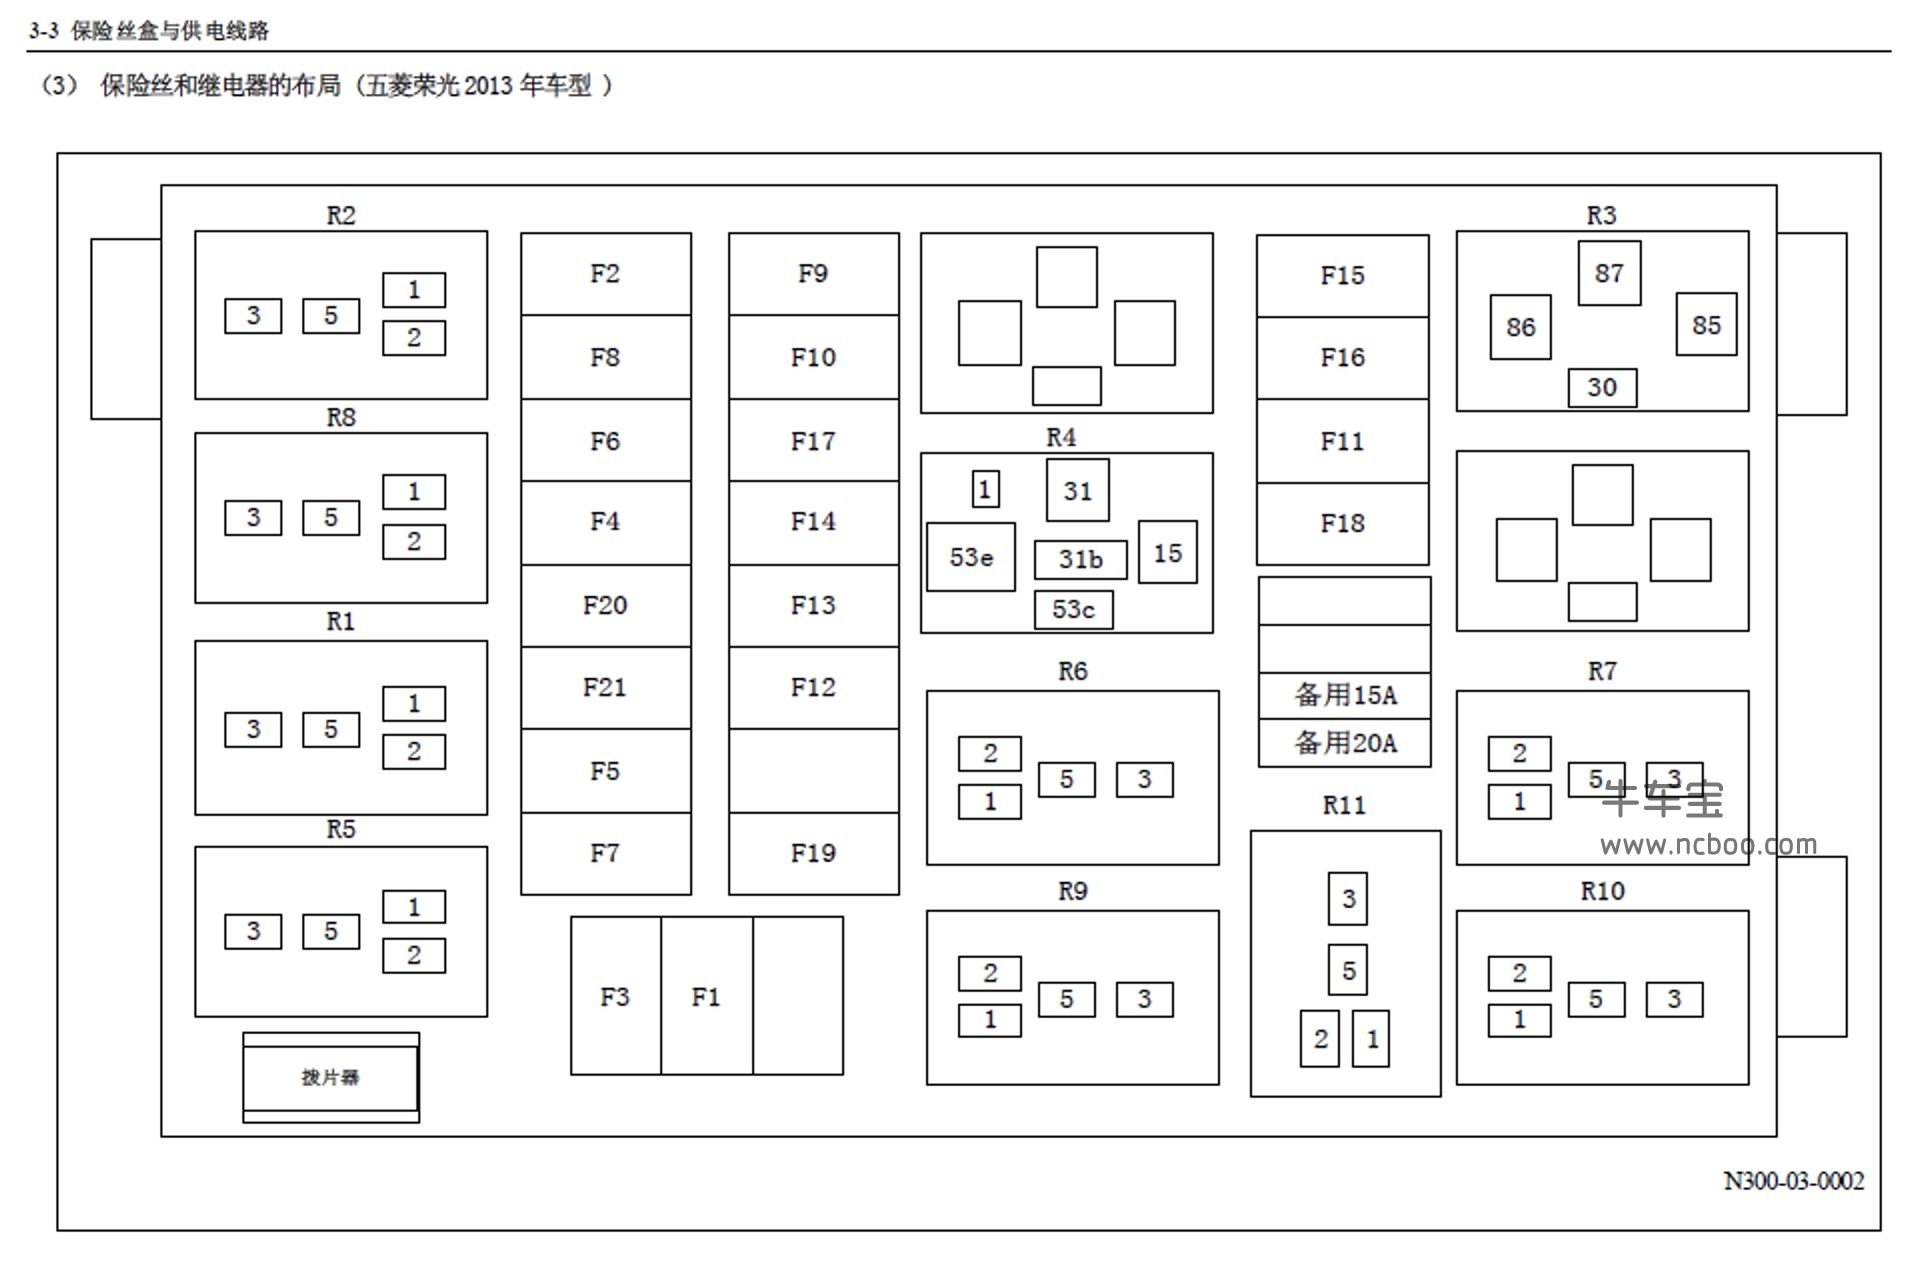 2013-2014款五菱荣光S(N310)原厂维修手册和电路图下载